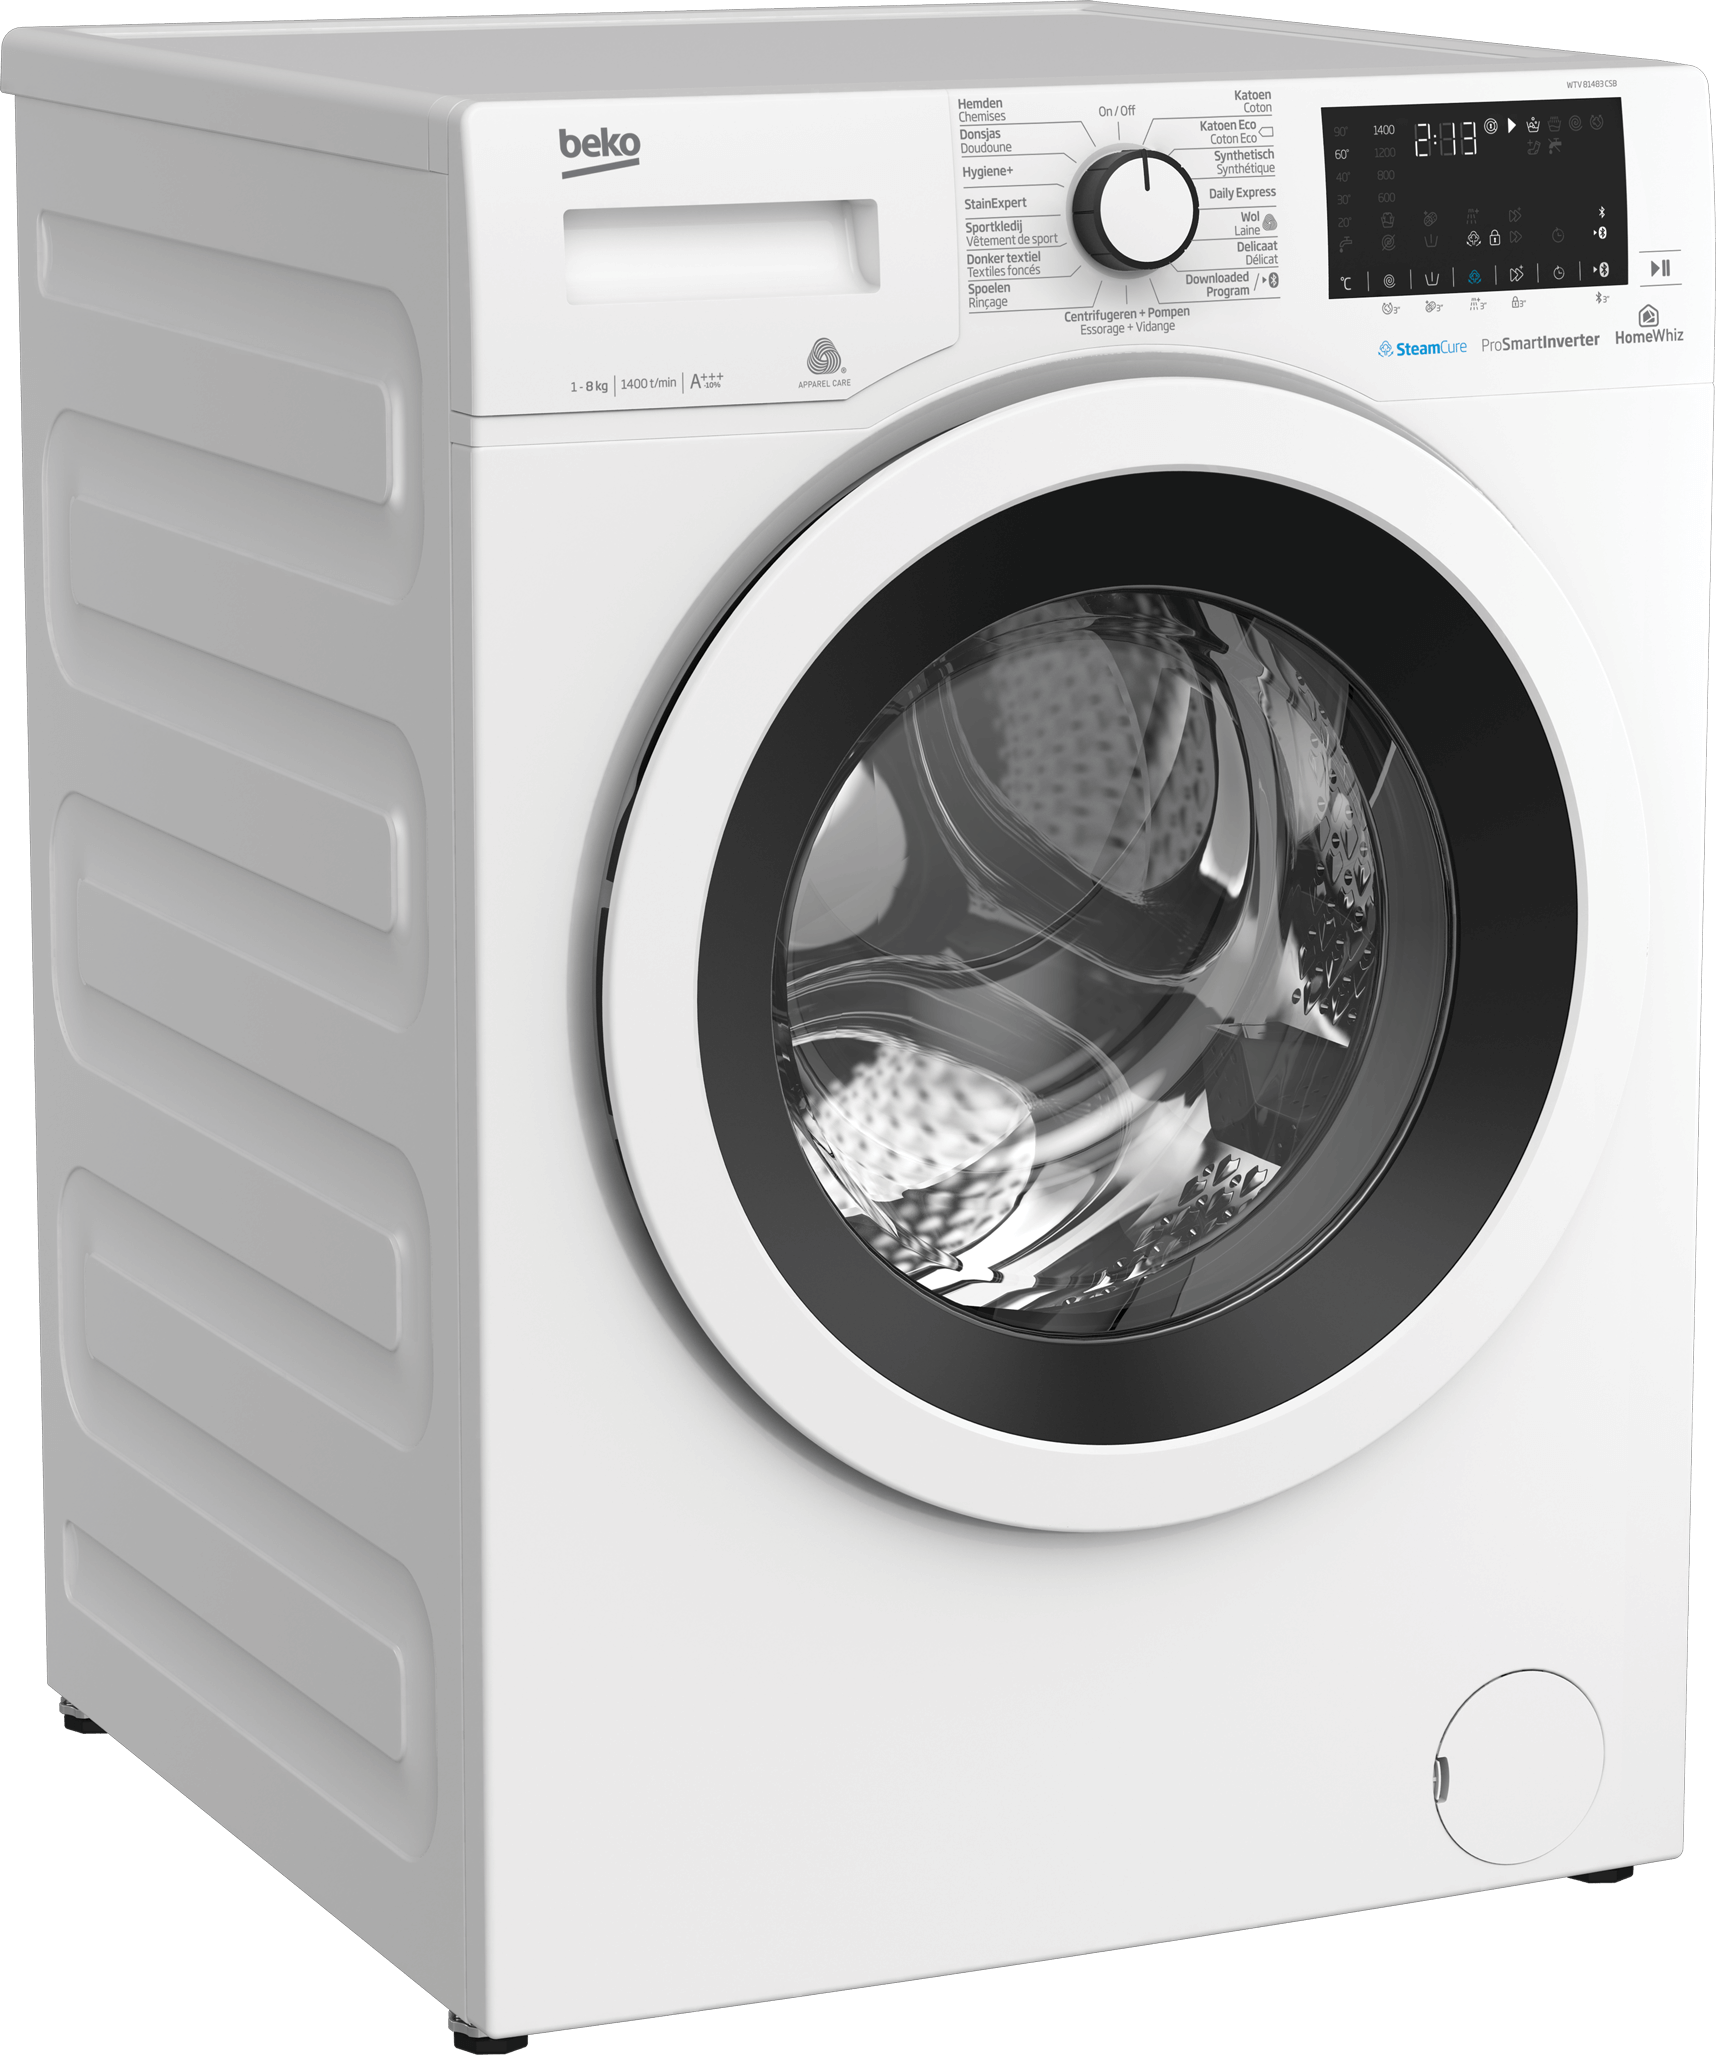 aftrekken ruilen Mysterieus Wasmachine Beko WTV81483CSB 1400t/m 8 kg - i.Lectro - Elektro met service  aan webshop prijzen